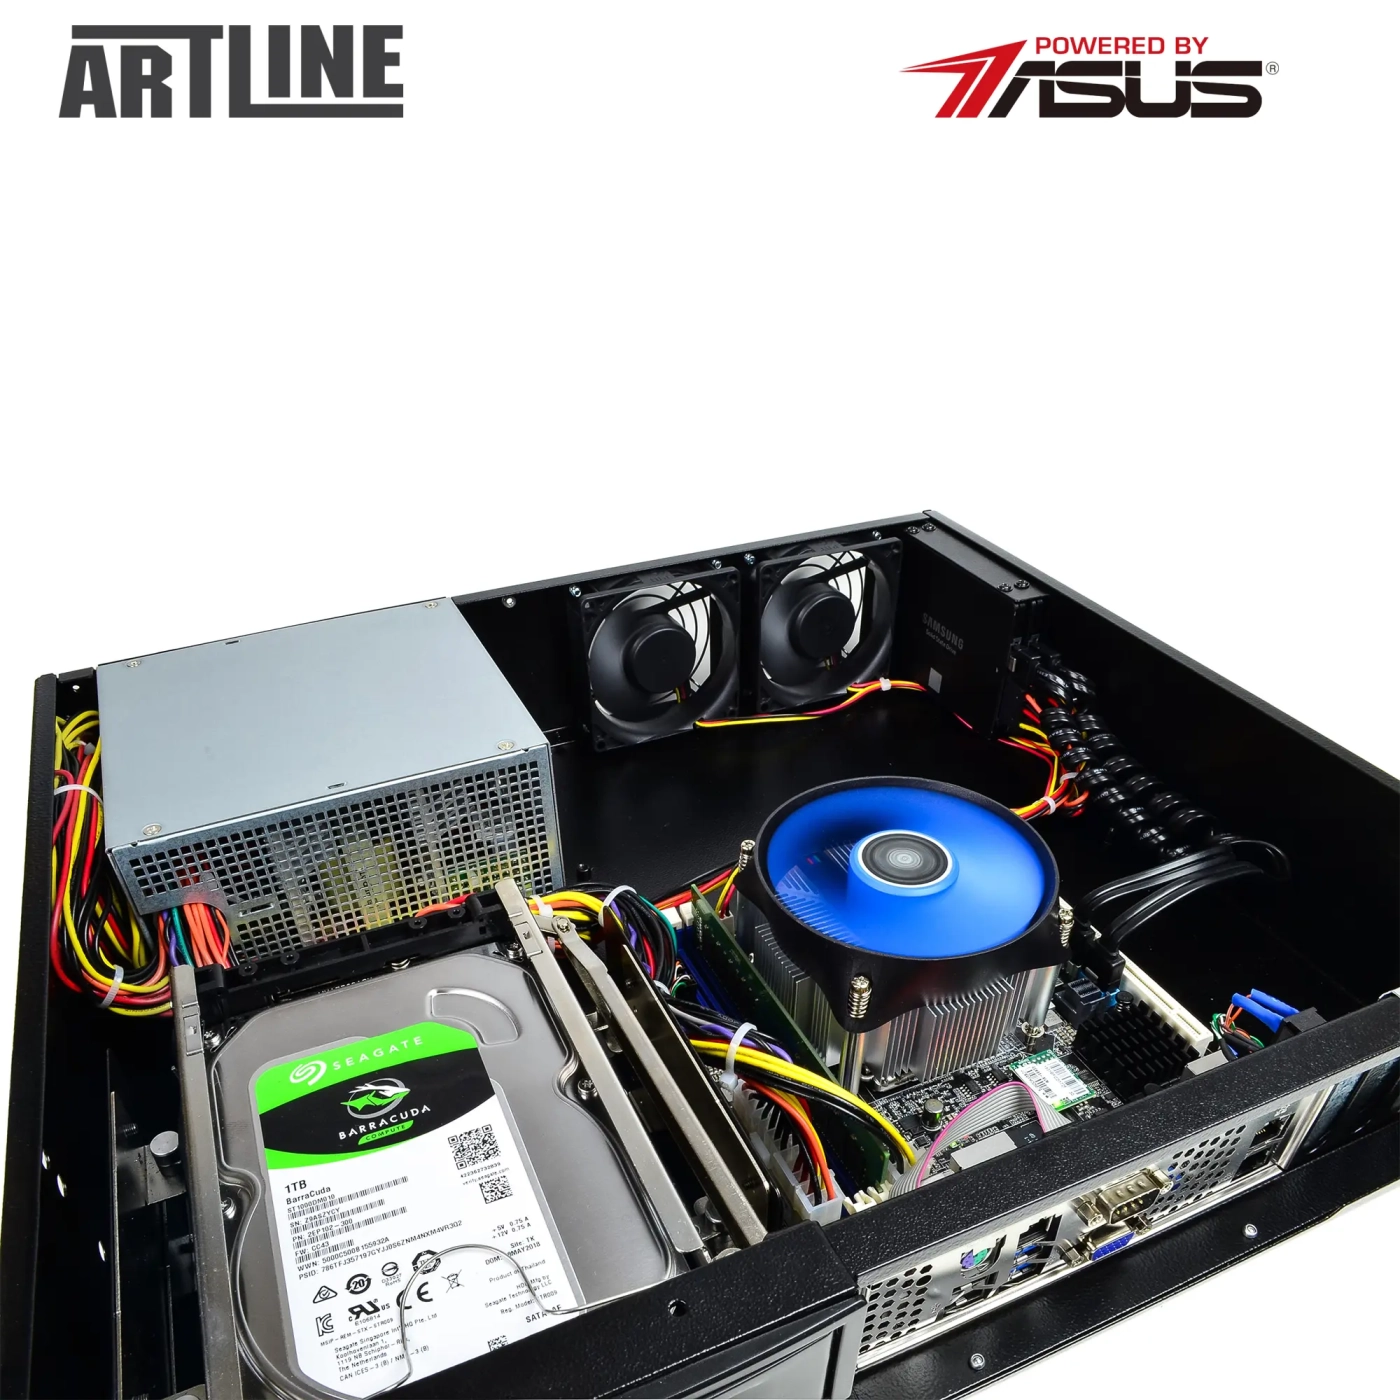 Купить Сервер ARTLINE Business R37 (R37v66) - фото 10